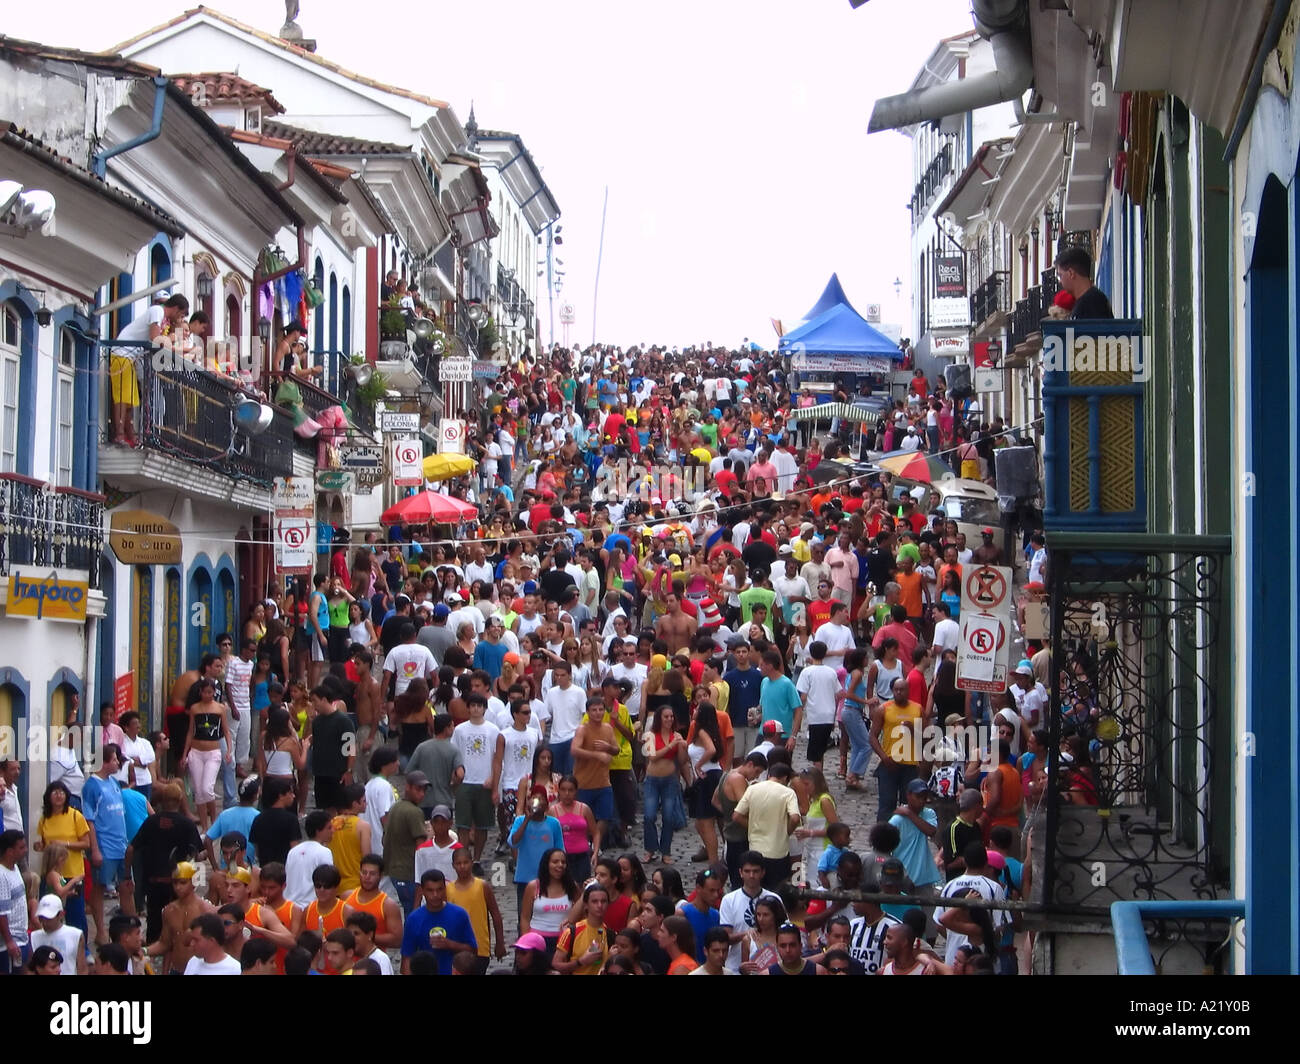 carnival in Ouro Preto, Minas Gerais, Brazil Stock Photo - Alamy